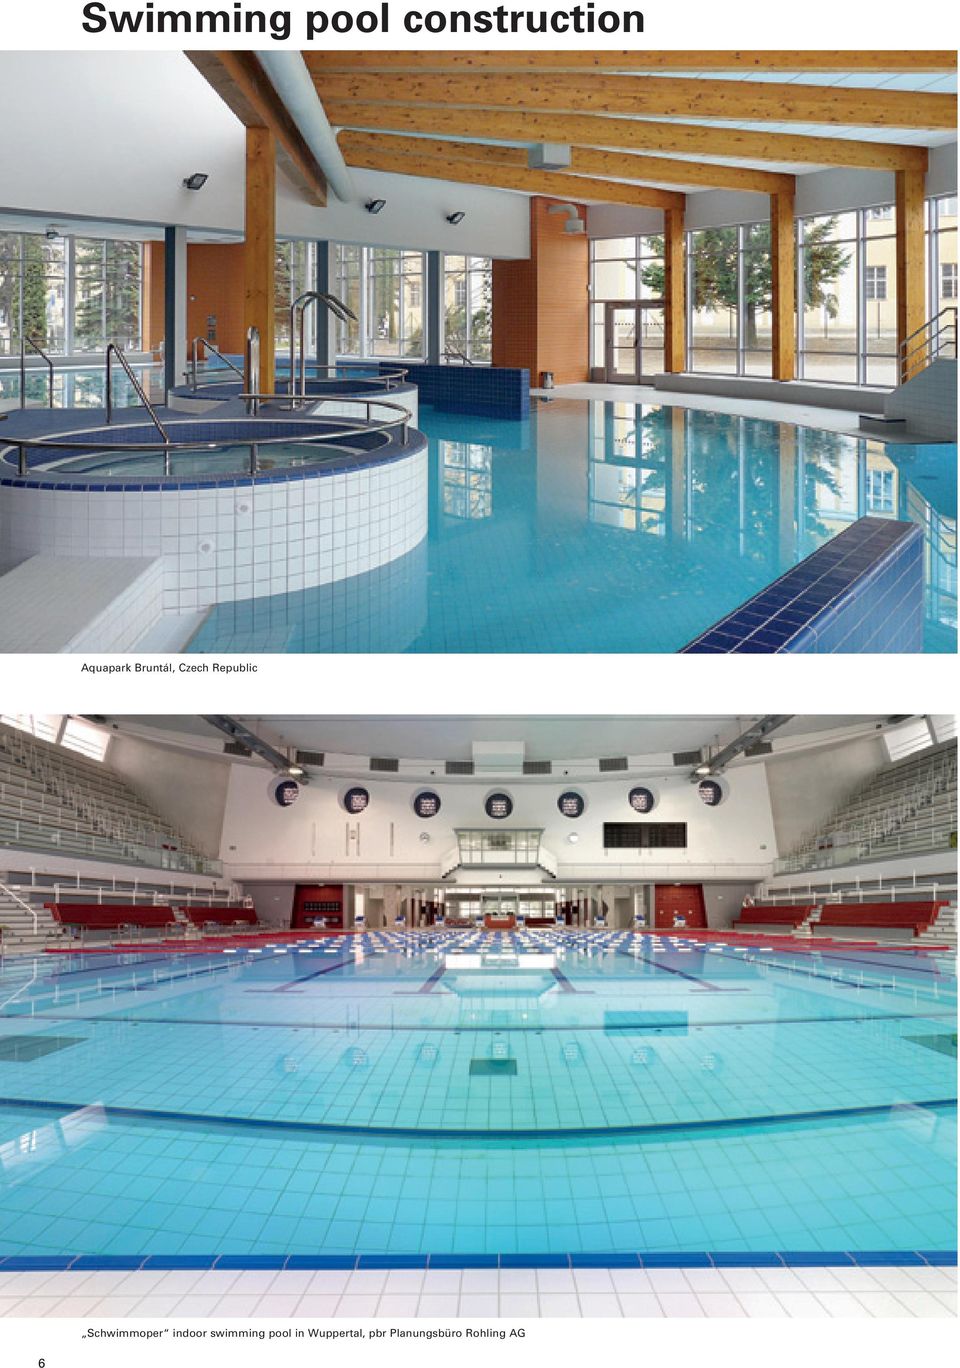 Schwimmoper indoor swimming pool